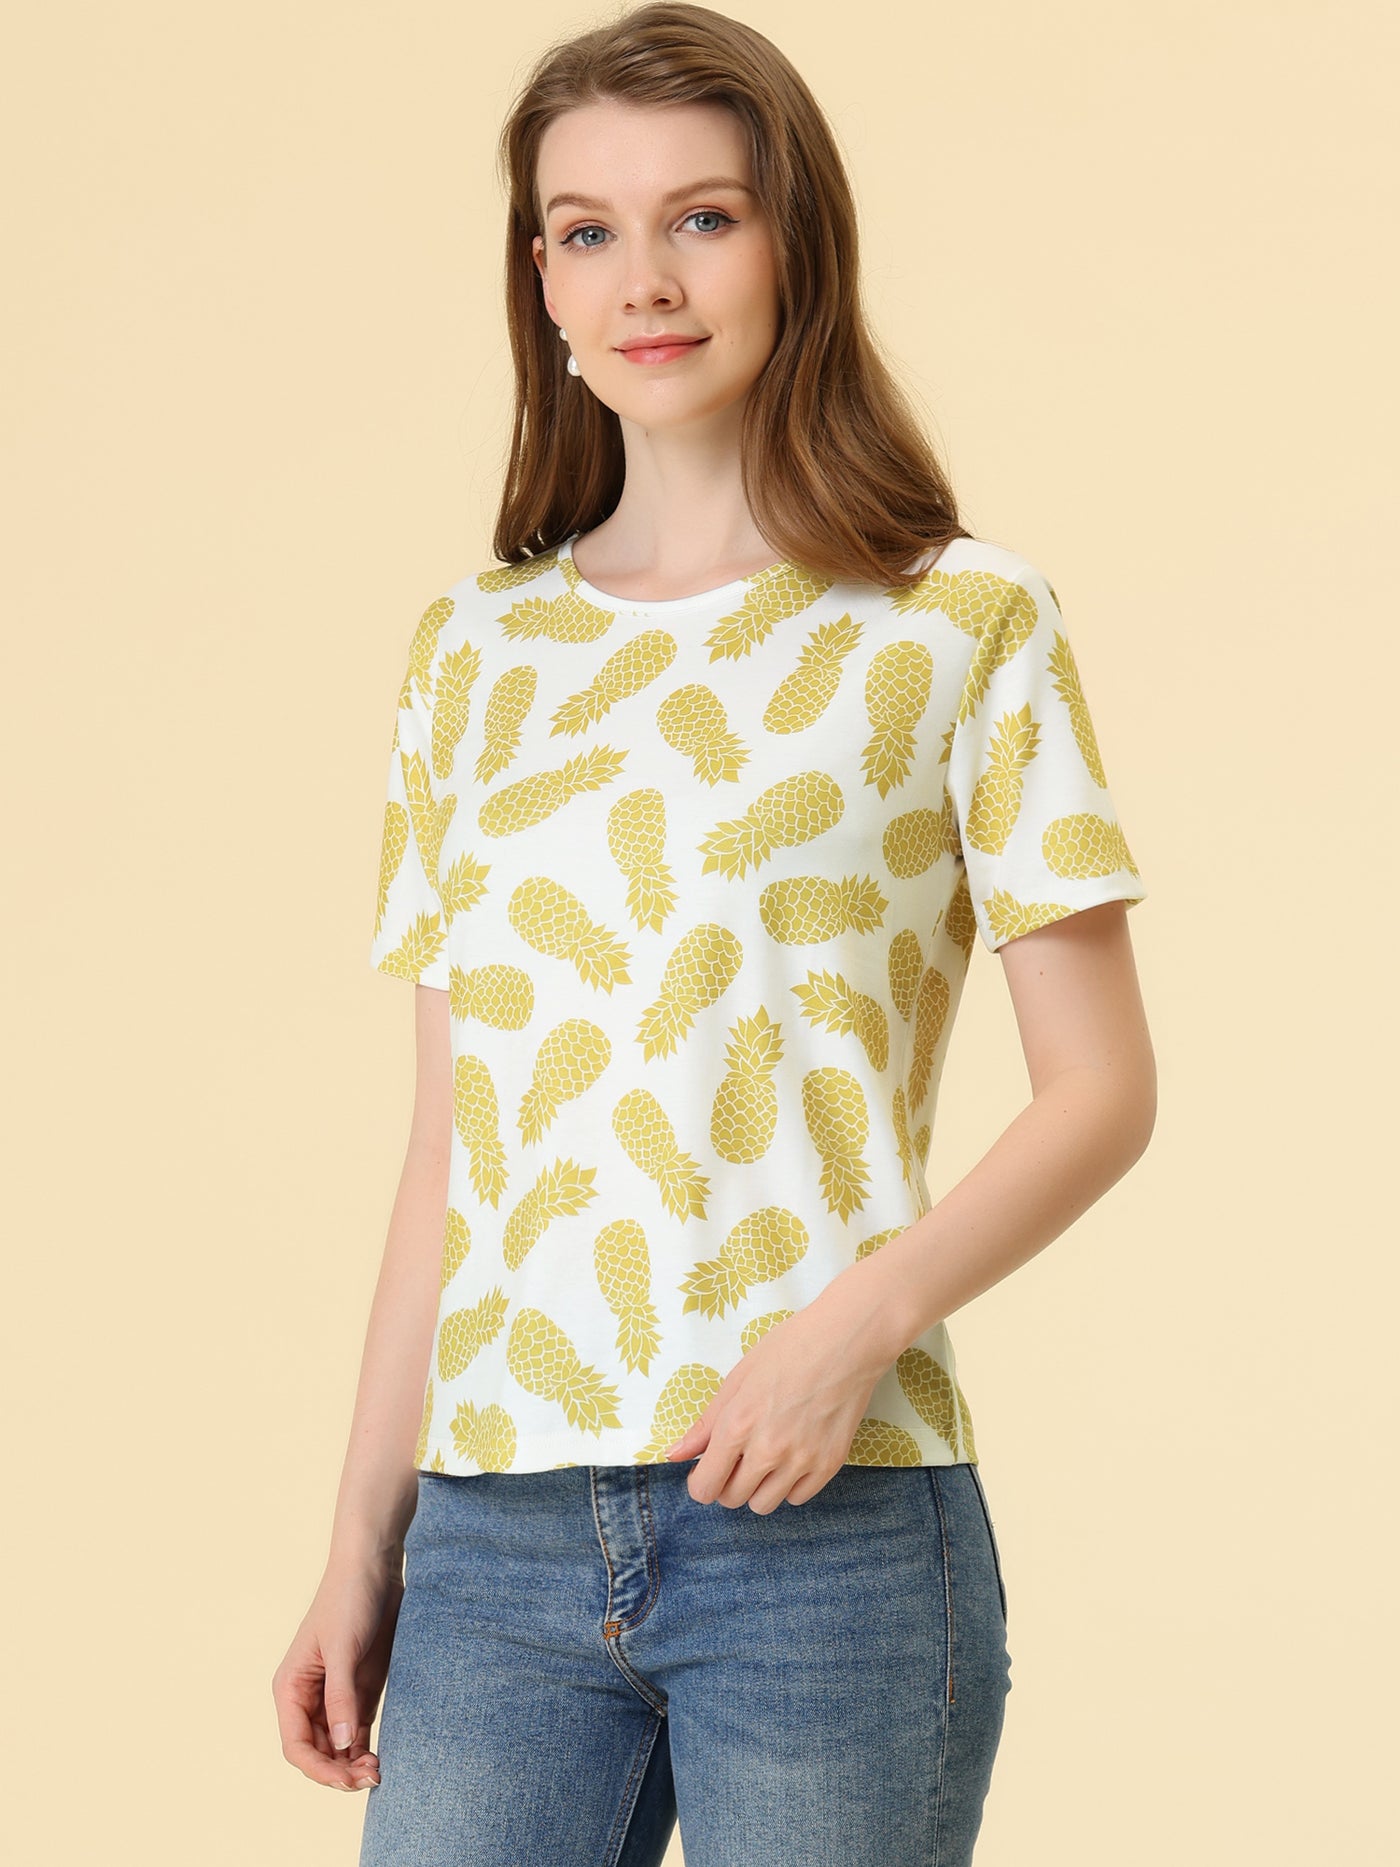 Allegra K Summer Fruit Print Top Round Neck Short Sleeve Cute T-Shirt